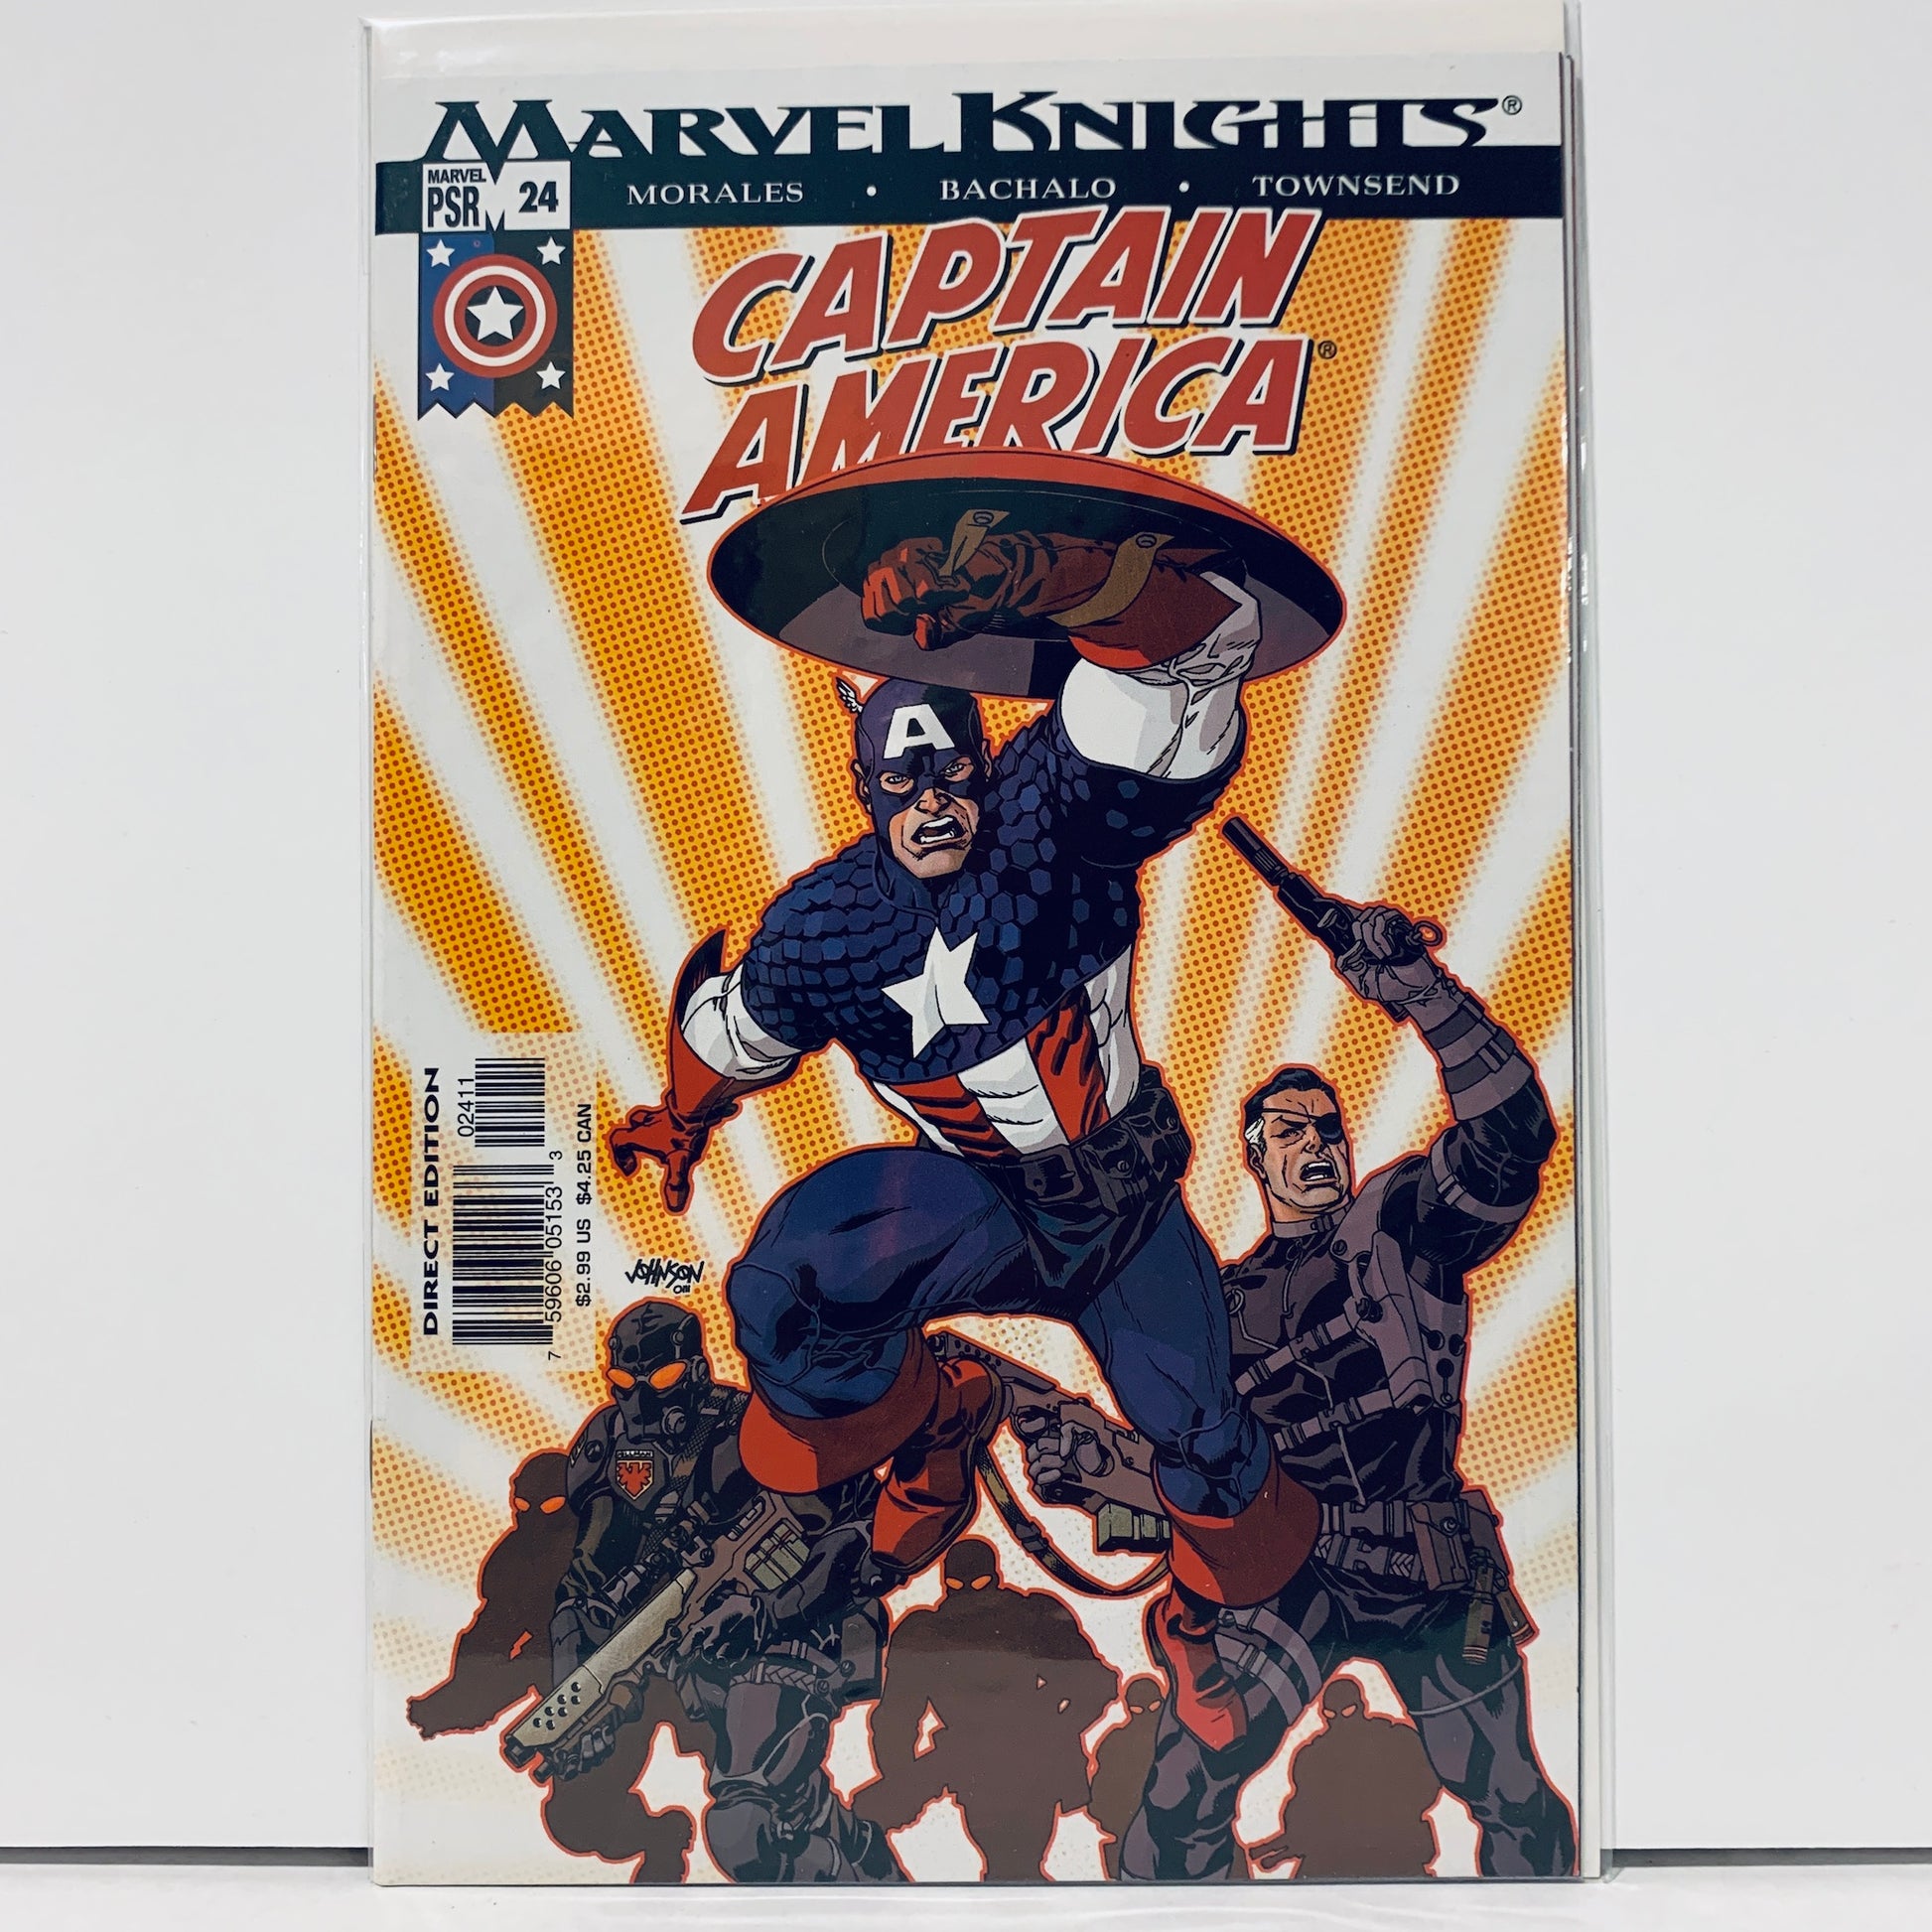 Captain America (2002) #24 (NM)